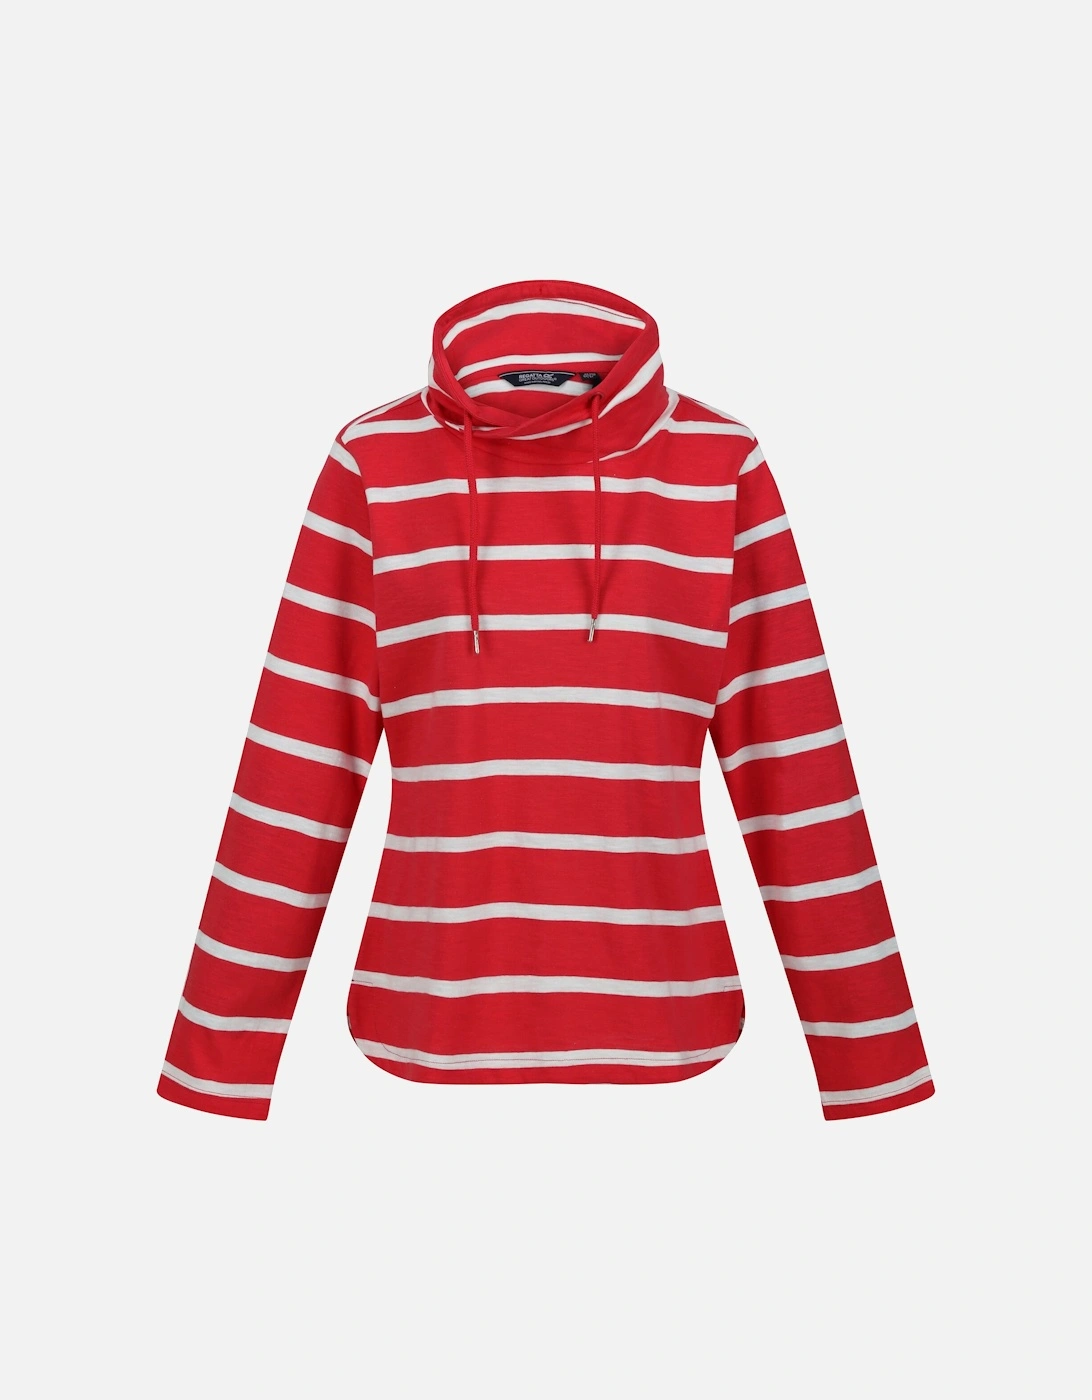 Womens/Ladies Helvine Striped Sweatshirt, 6 of 5